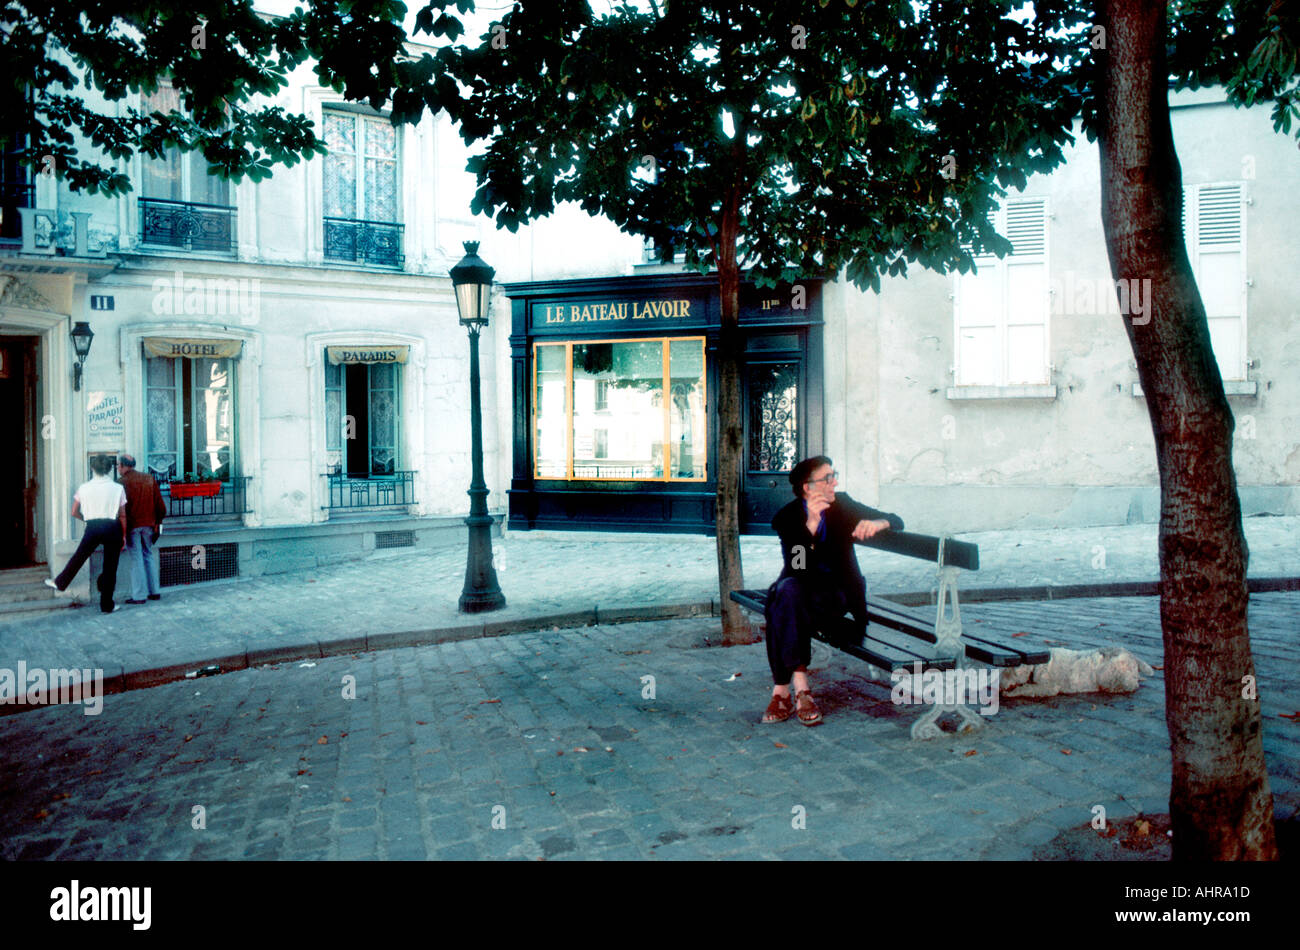 Paris France, Montmartre personnes assises sur le banc pubien, devant 'Street Scene' 'le bateau Lavoir' Picasso Studio, lampadaire de Paris Banque D'Images